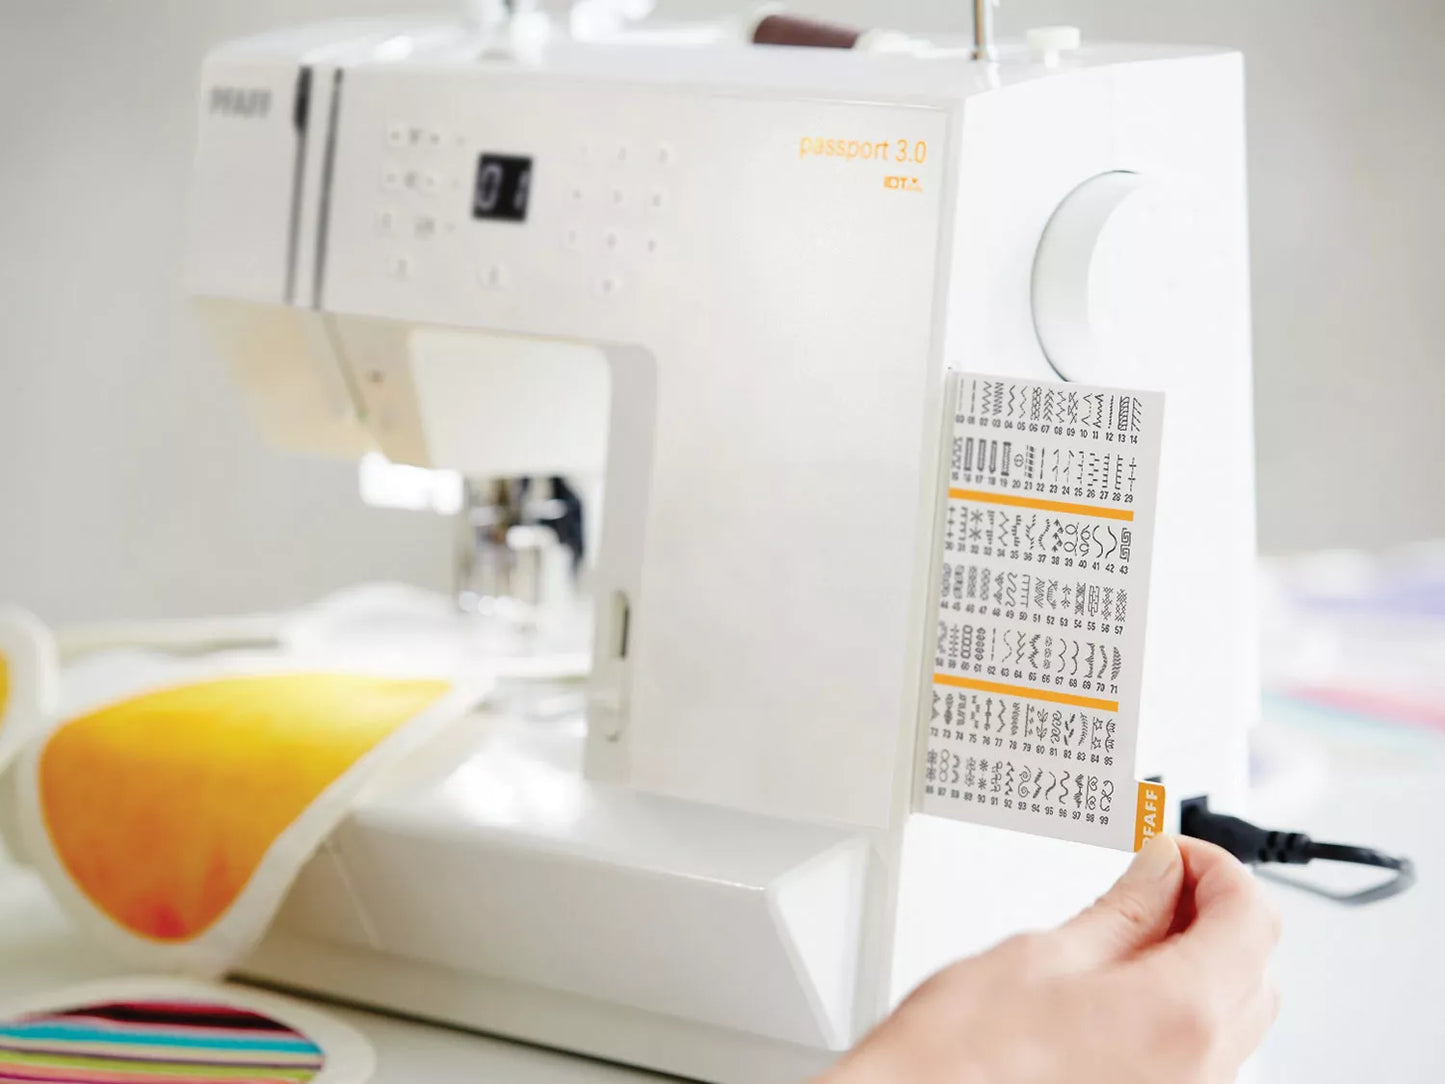 passport 3.0 Sewing Machine